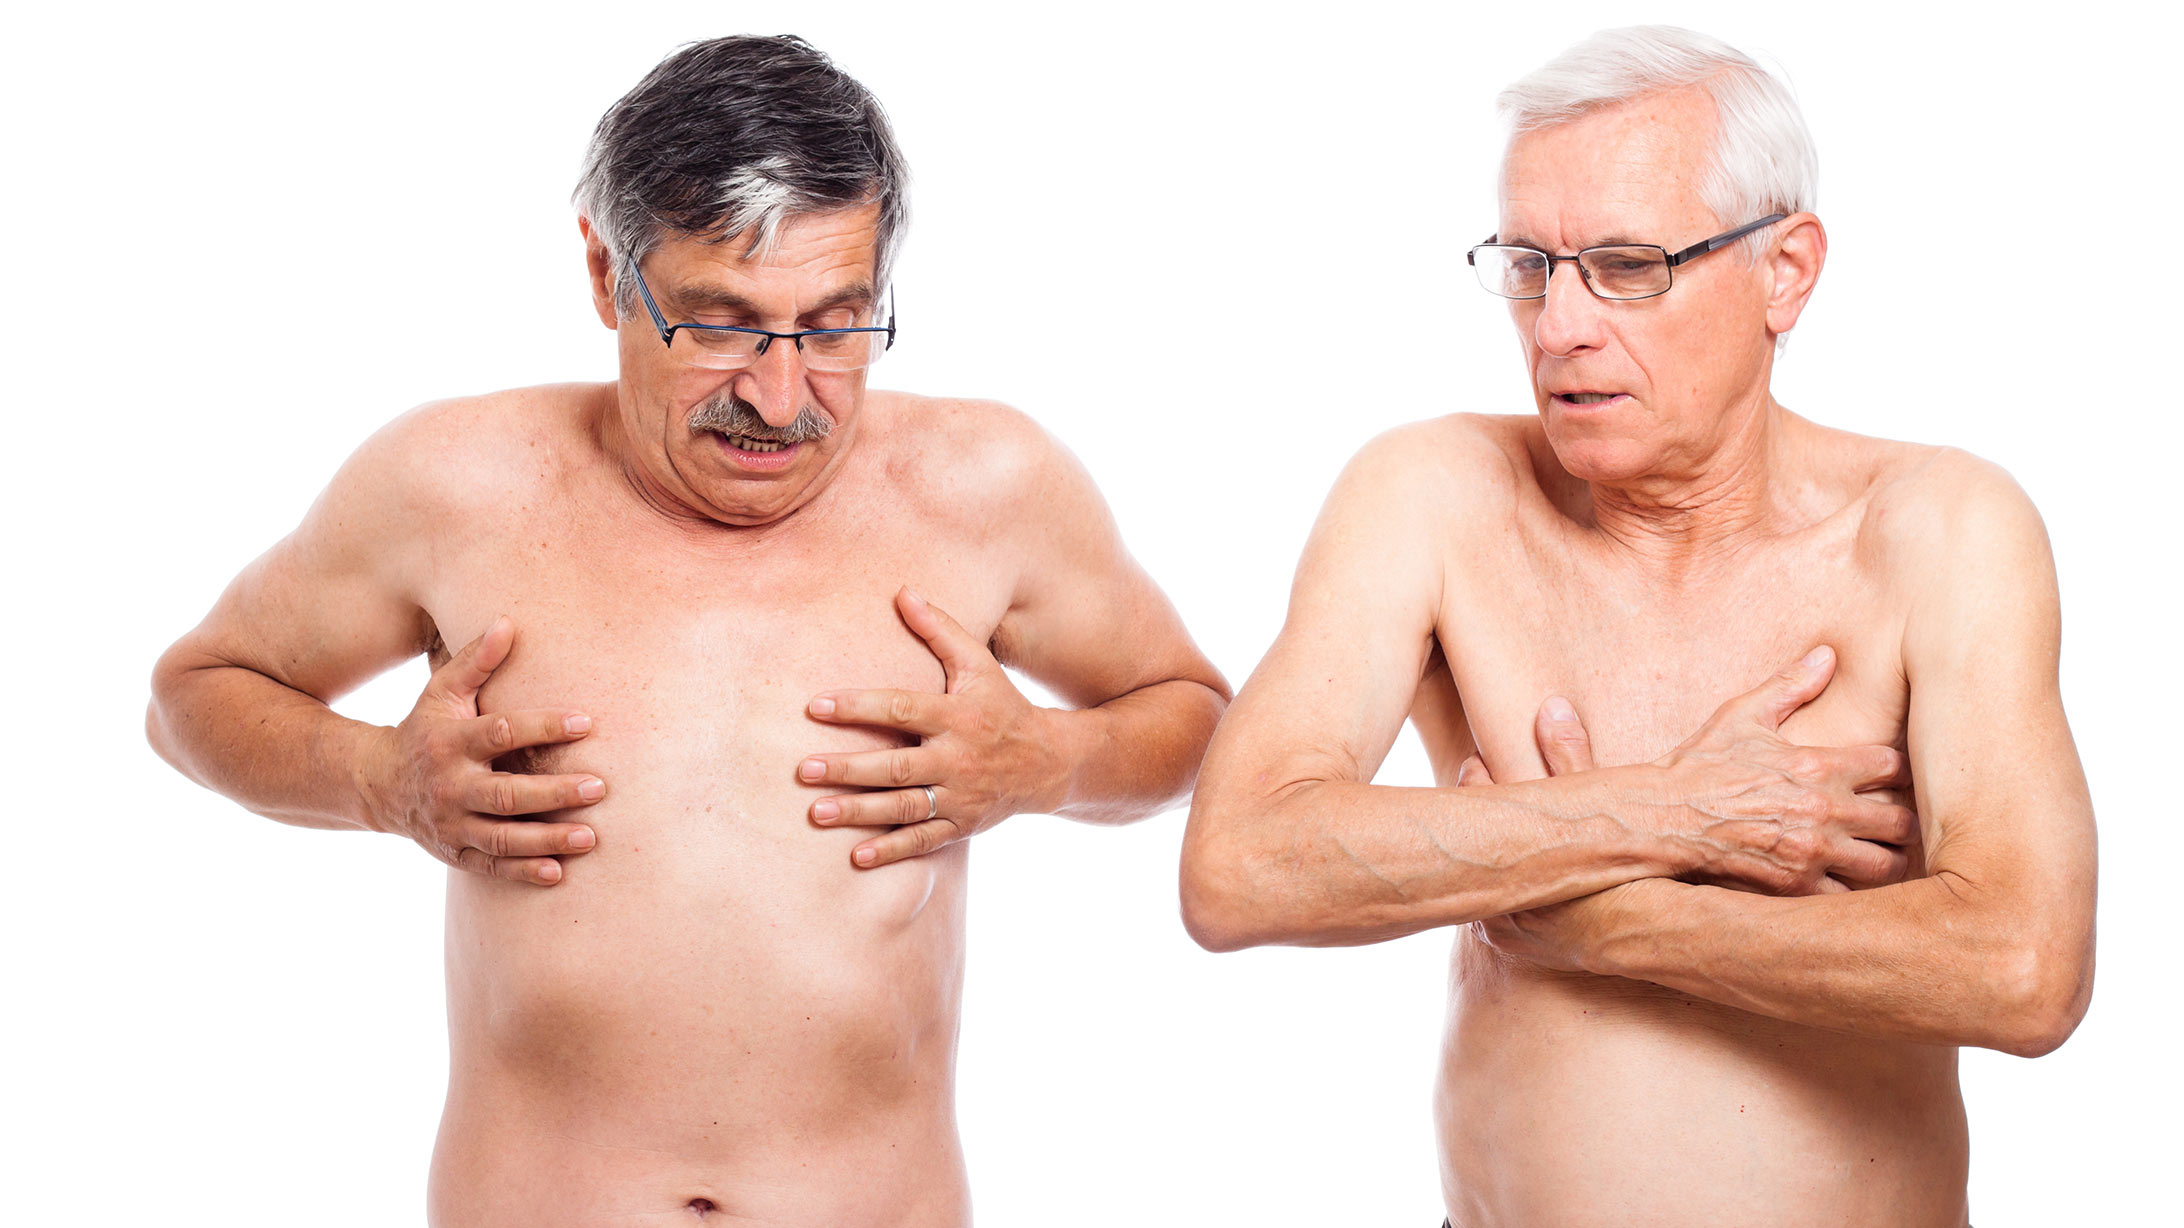 Brustkrebsrisiko: Zwei Männer verdecken ihre Brust mit den Händen